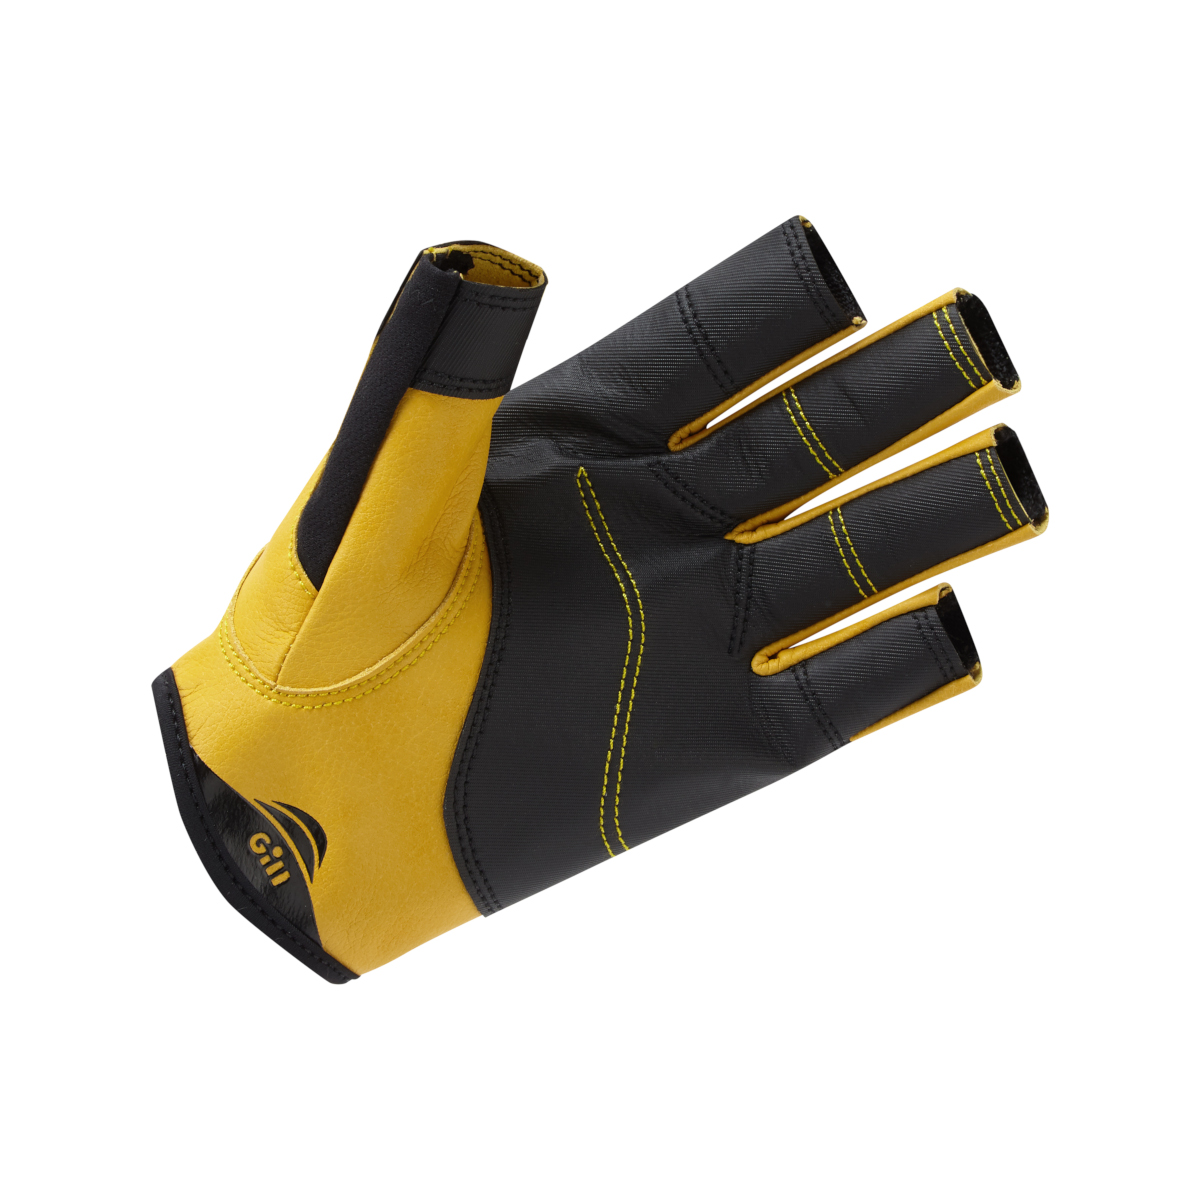 Gill Pro gants de voile à doigts courts - noir, taille XXL